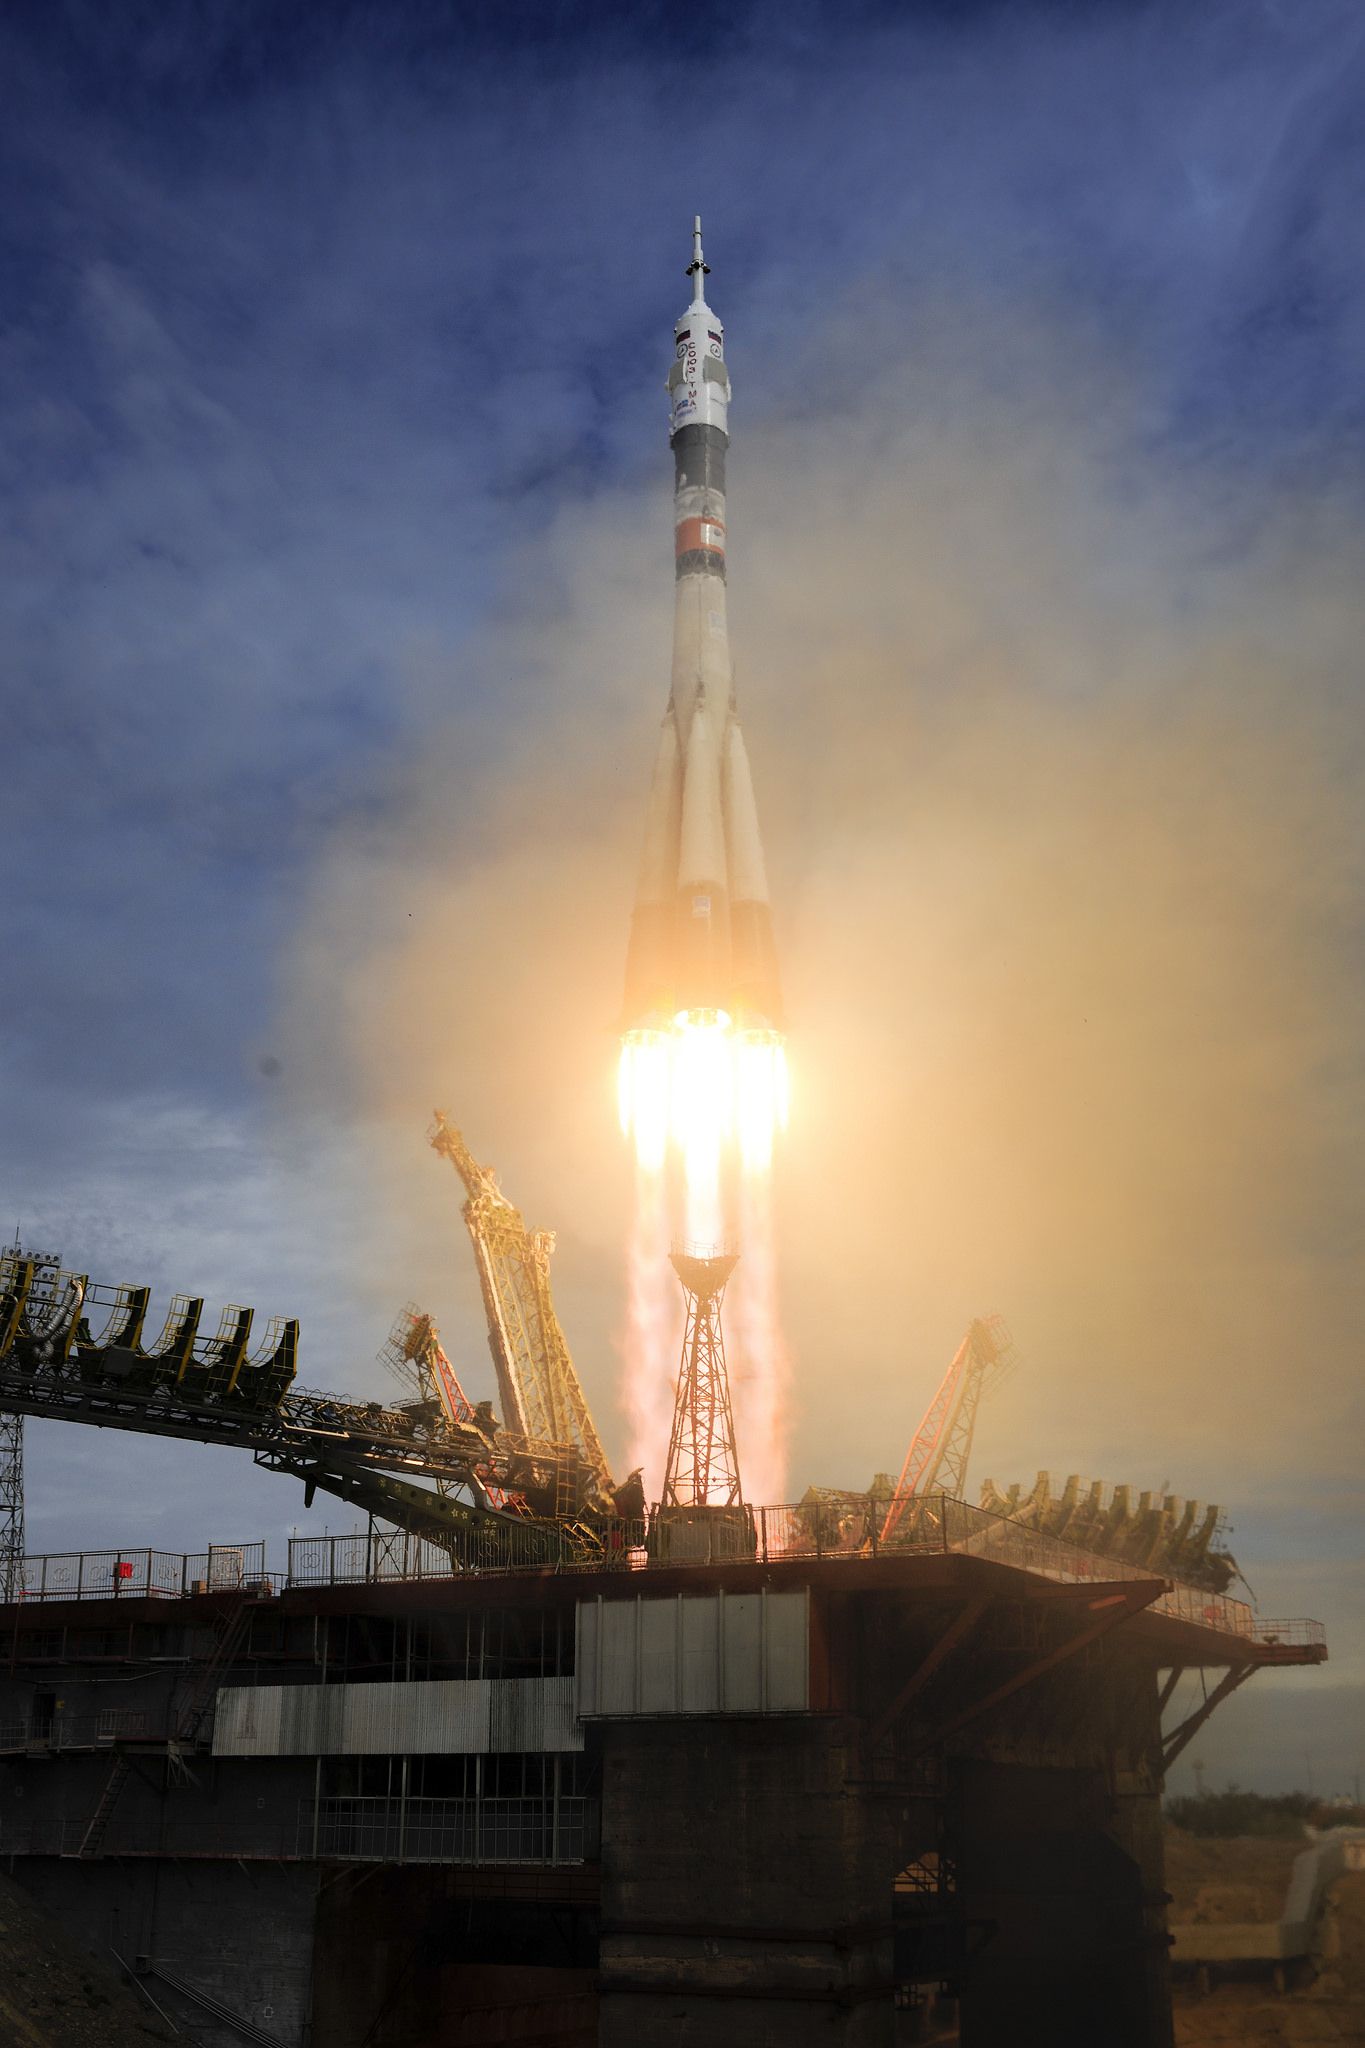 Décollage Soyouz TMA-18M de Baikonour le 2 Septembre à 4:38 UTC (Crédits : ESA-S. Corvaja)